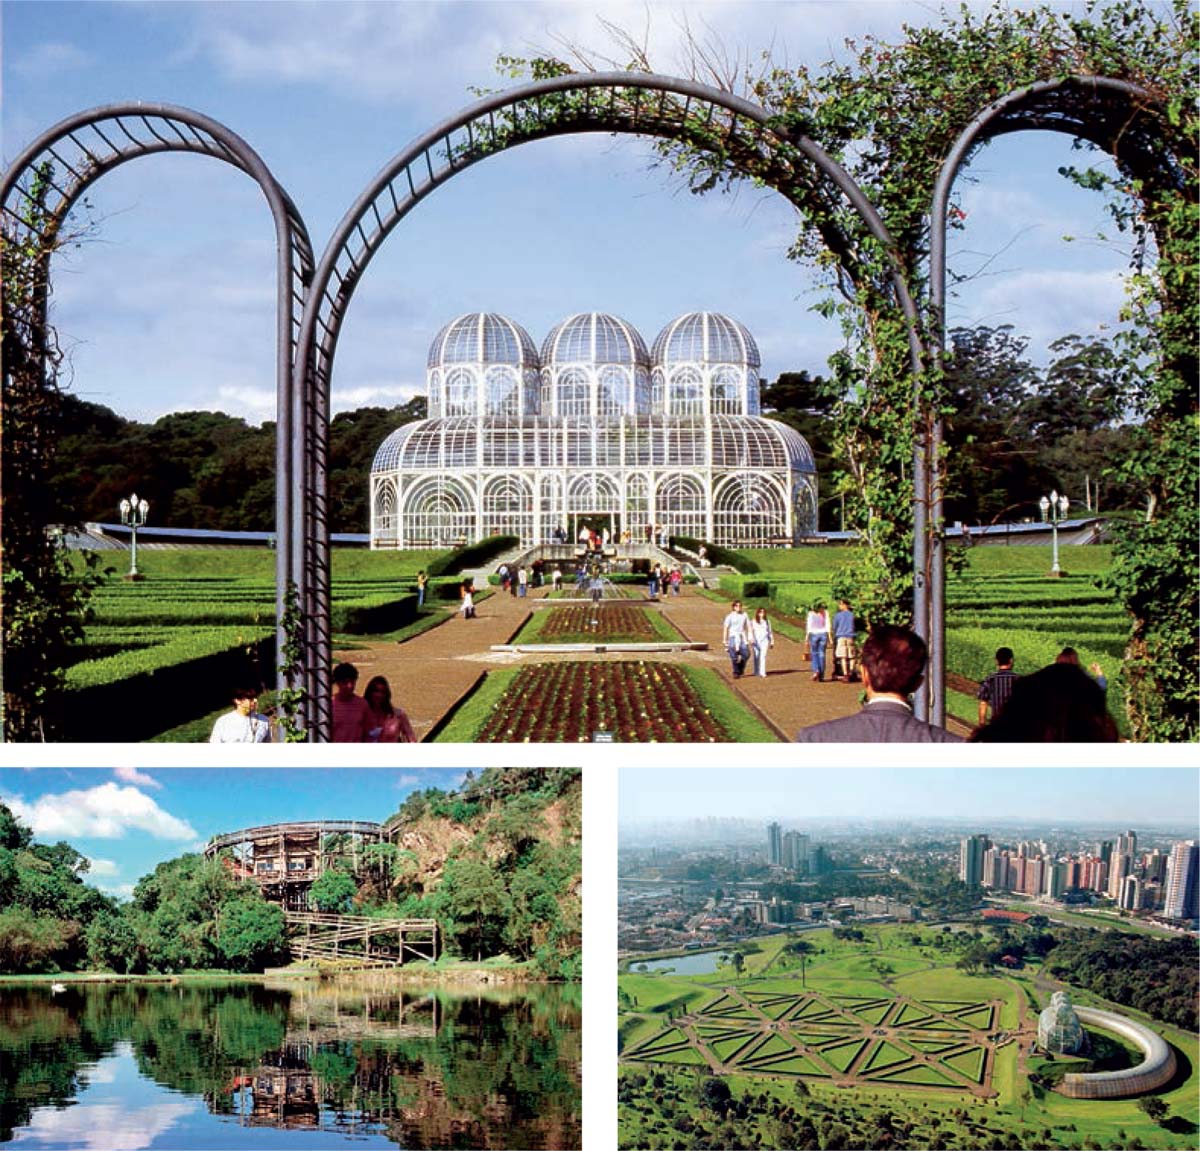 Building-Shared-Dreams-Botanical-Garden-Free-University-Environment-Universidade-Livre-do-Meio-Ambiente